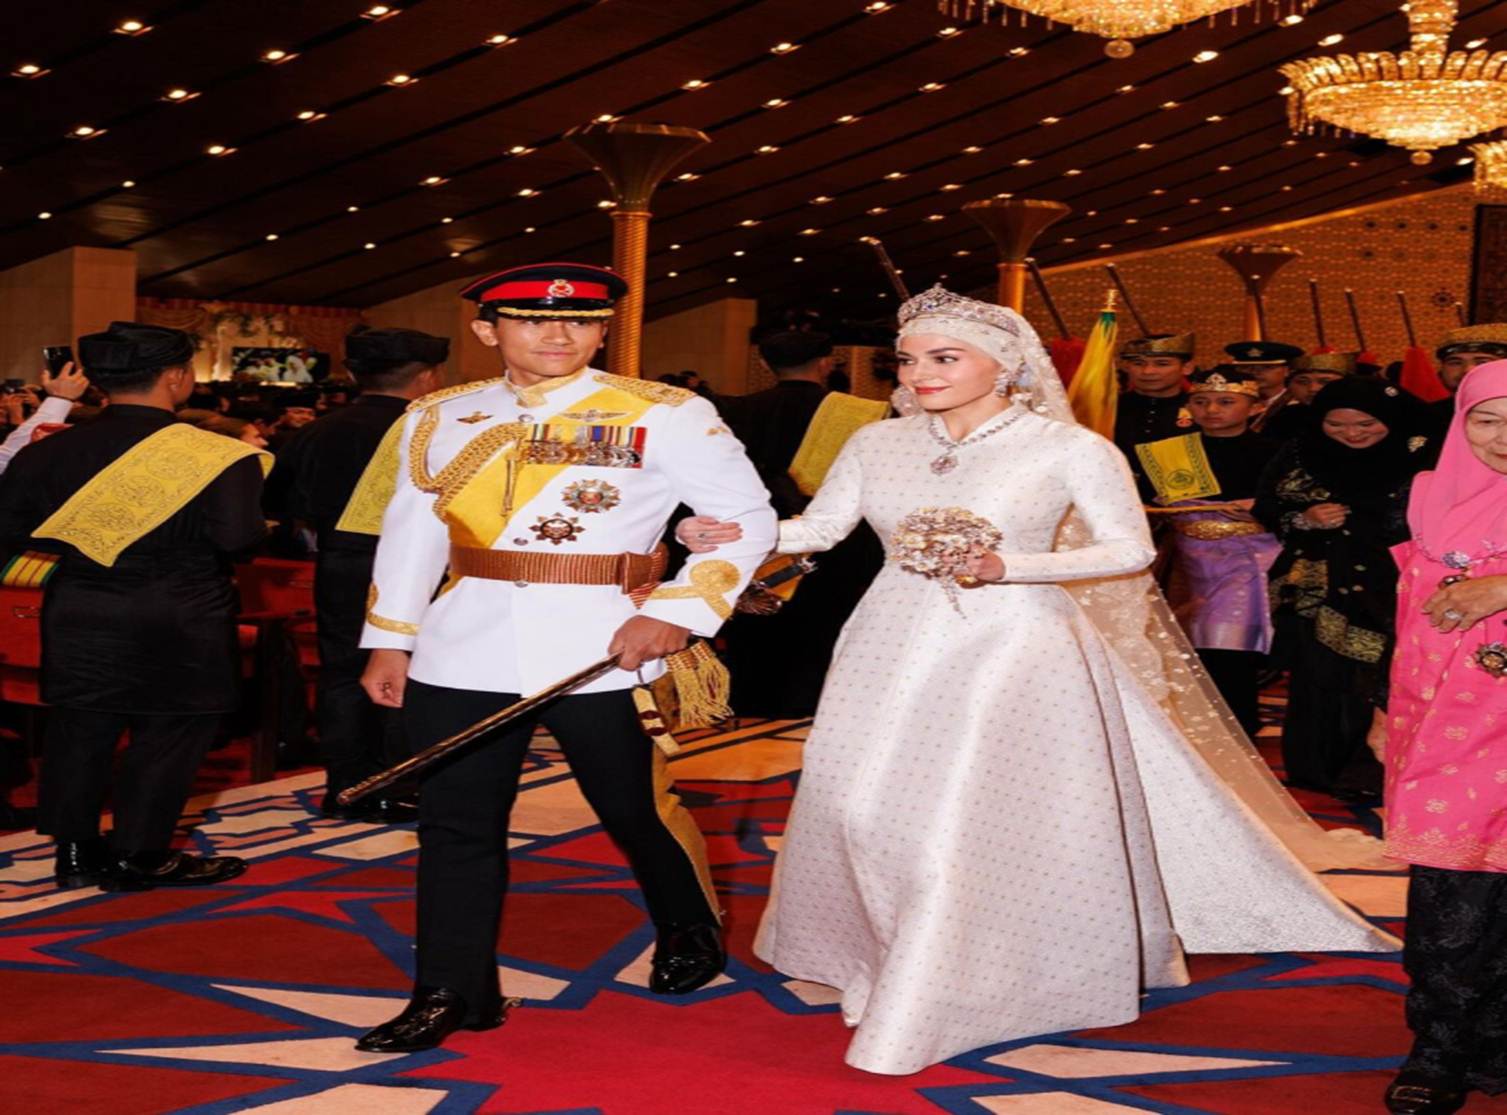 Hoàng tử tỷ đô Brunei thu hút 7 triệu người chỉ qua một ánh mắt nhìn vợ, đám cưới xa hoa tựa cổ tích lọt top tìm kiếm-1